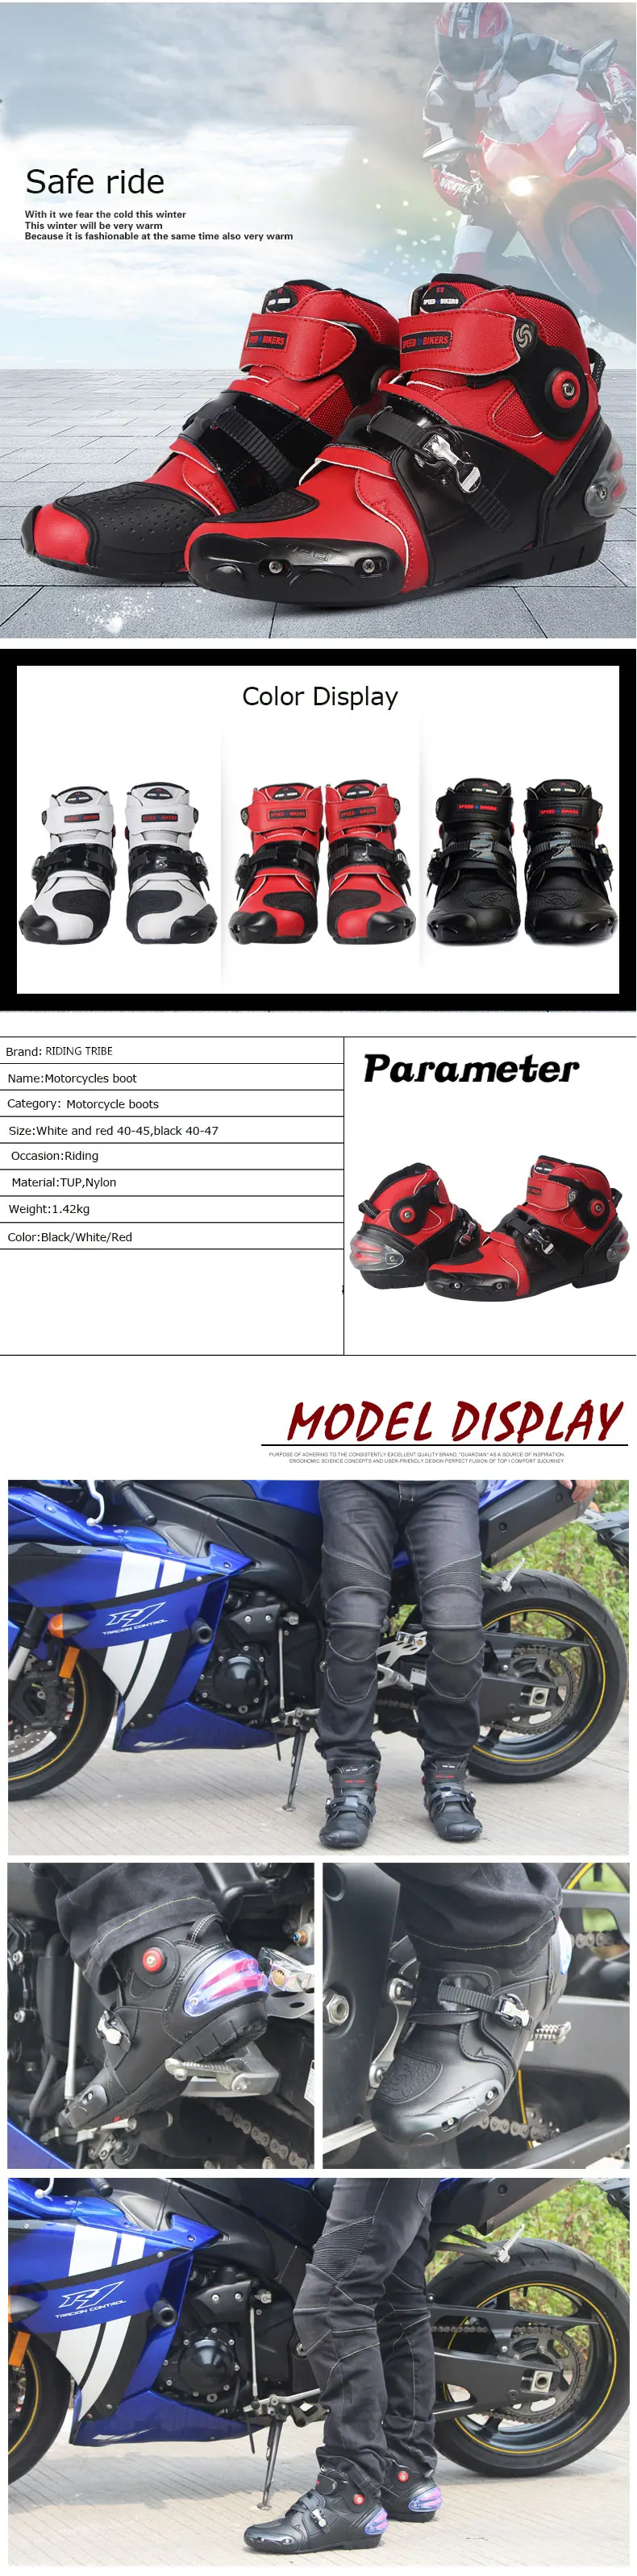 Мотоботы A9003 скорость дорожных moto Racing moto крест Мужская обувь moto rbike; Цвет черный, красный; размеры 40-47